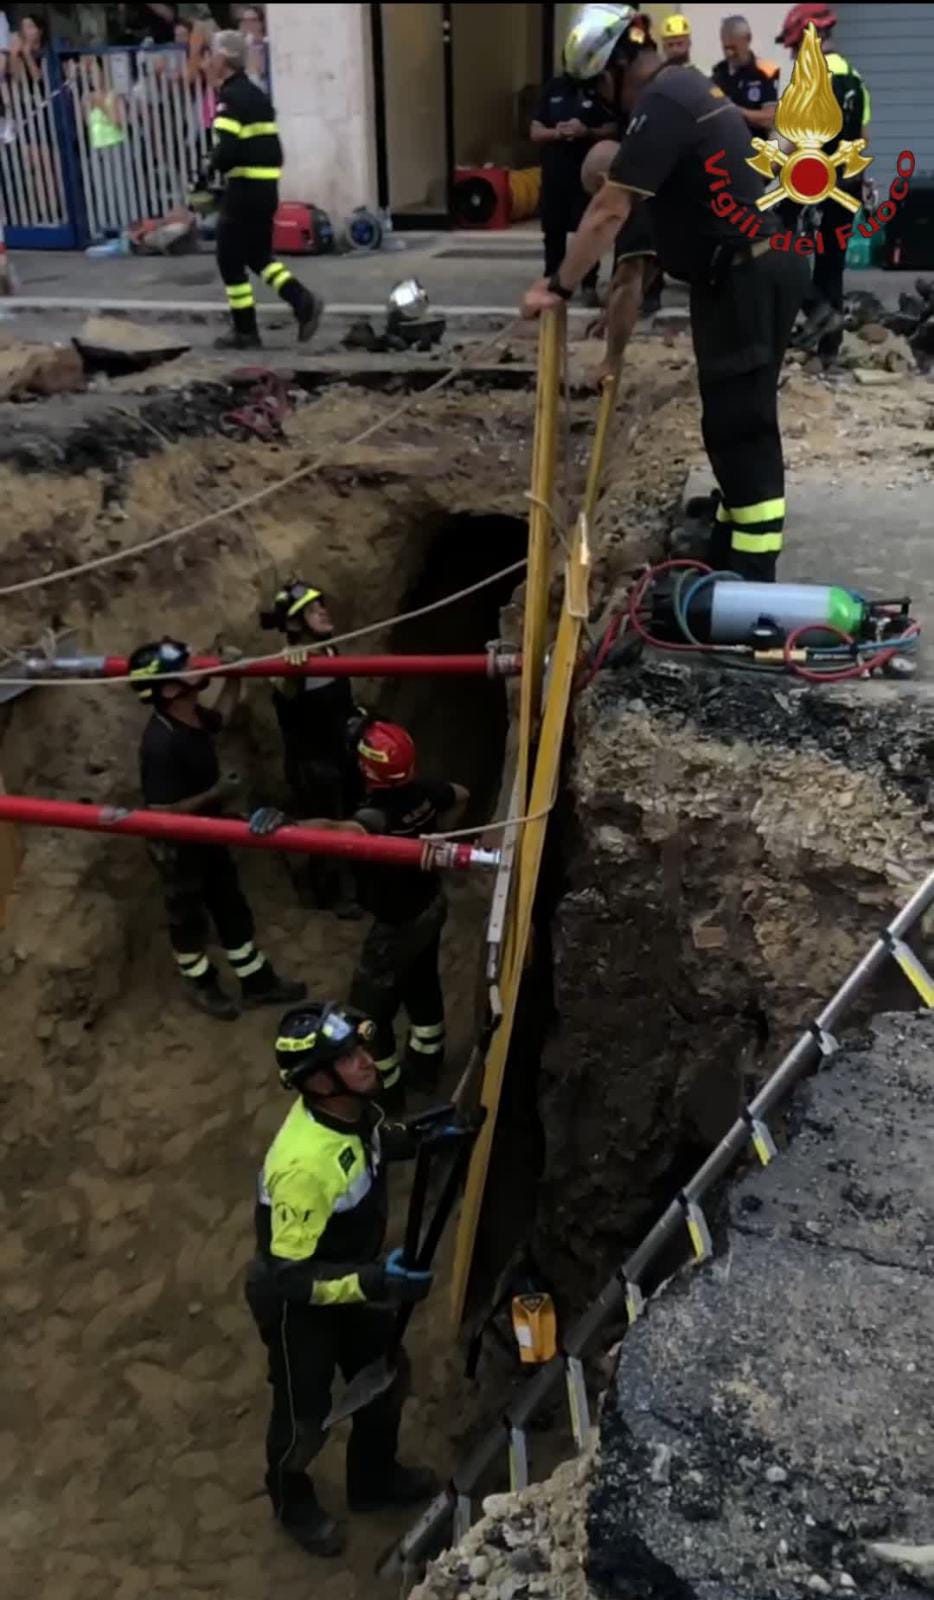 Roma, banda del buco in azione: salvato in extremis ladro rimasto incastrato nel tunnel 5